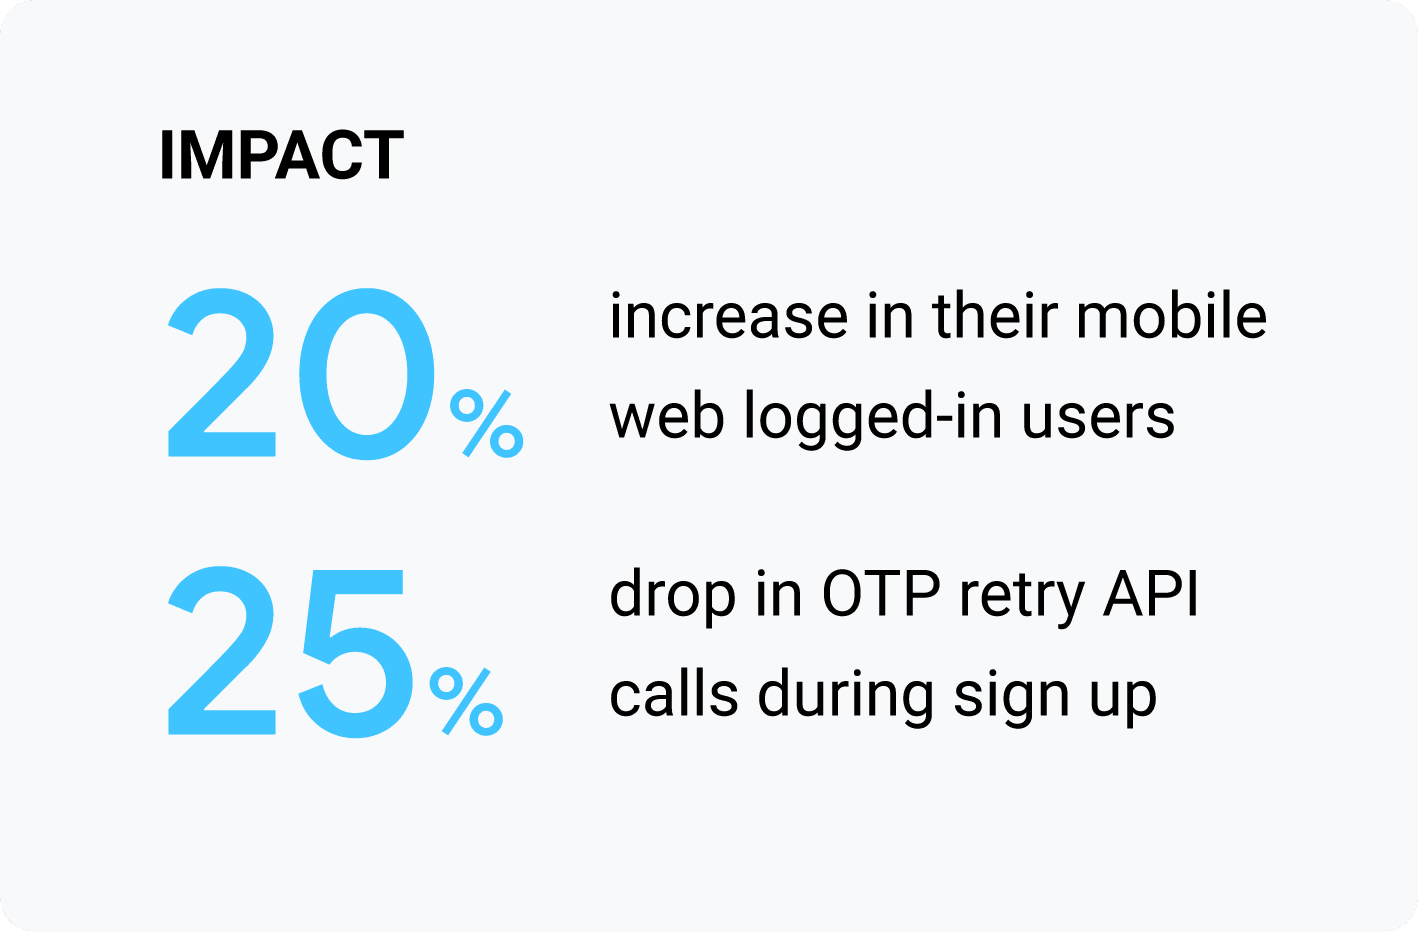 Etki: Mobil web&#39;e giriş yapan kullanıcıların sayısında% 20 artış, kayıt sırasında OTP yeniden deneme API çağrılarında% 25 düşüş.